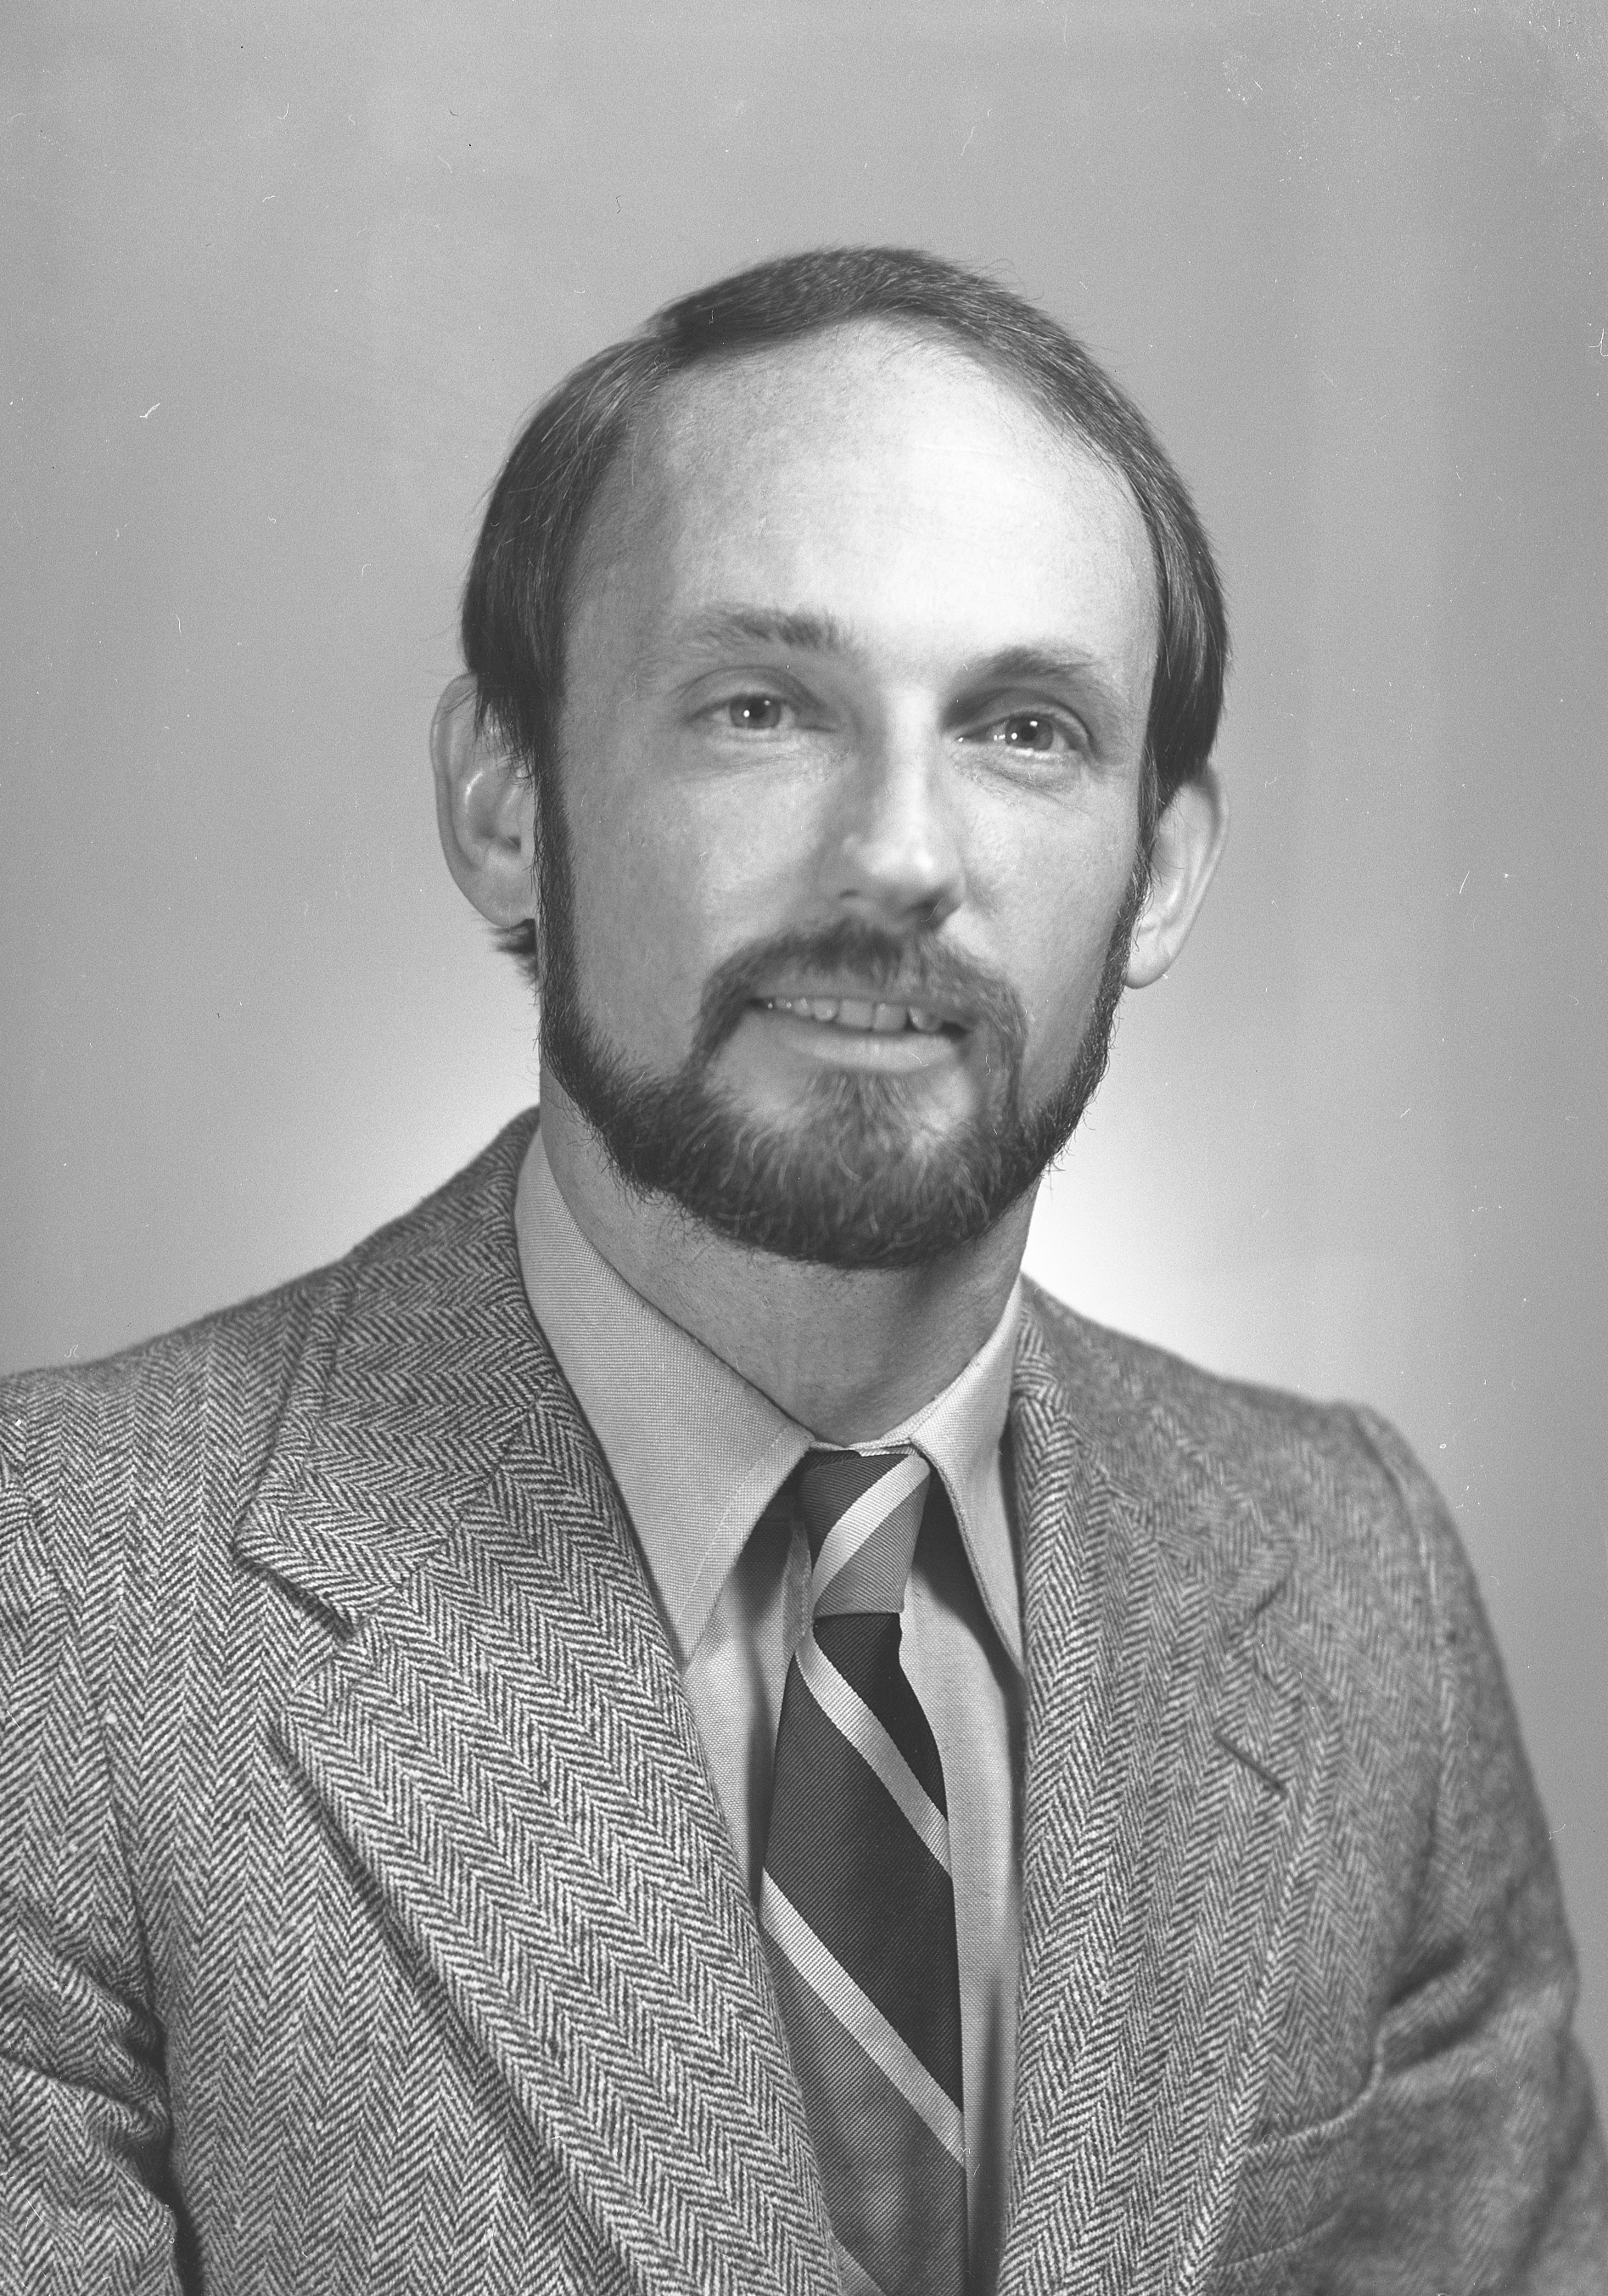 James R. Nattinger